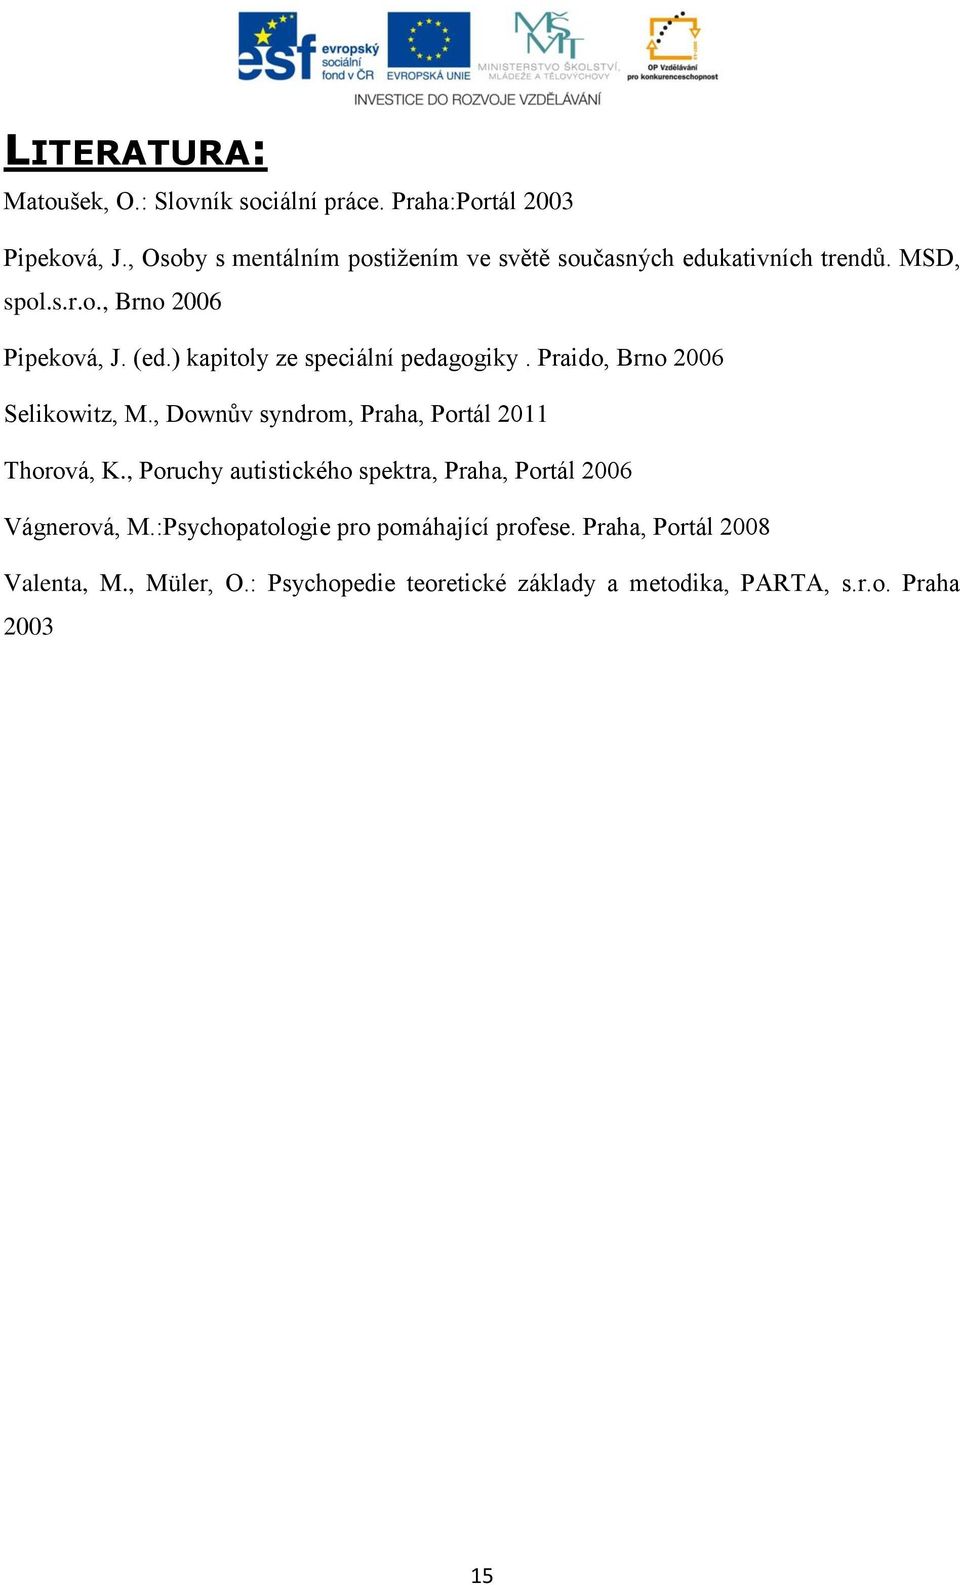 ) kapitoly ze speciální pedagogiky. Praido, Brno 2006 Selikowitz, M., Downův syndrom, Praha, Portál 2011 Thorová, K.